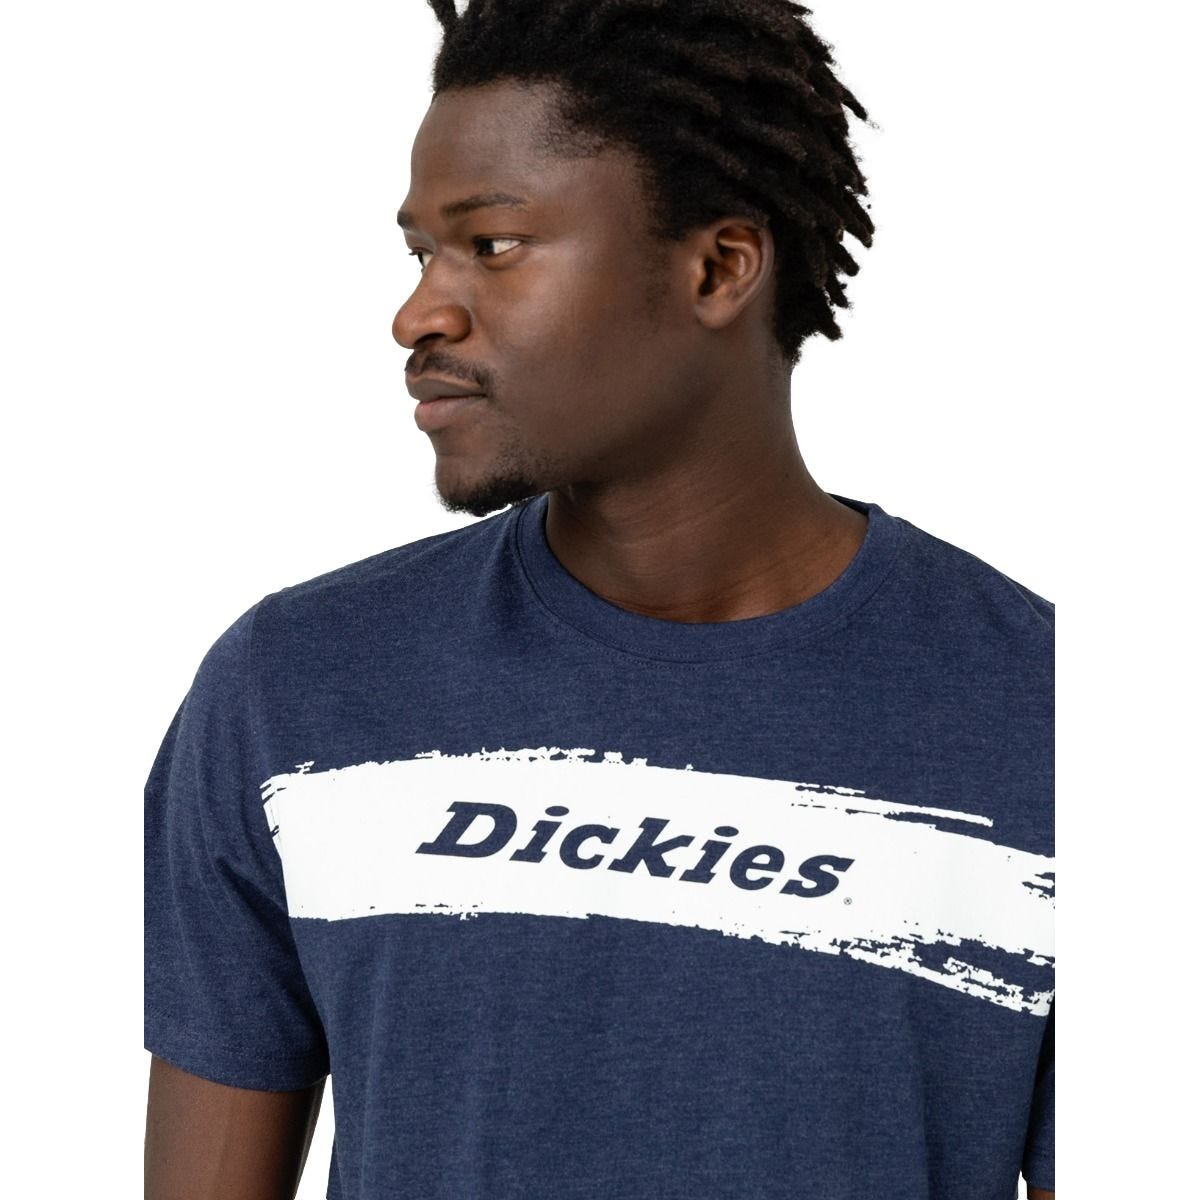 T-shirt à manches courtes pour homme Stanton bleu marine - Dickies - Taille XL 3